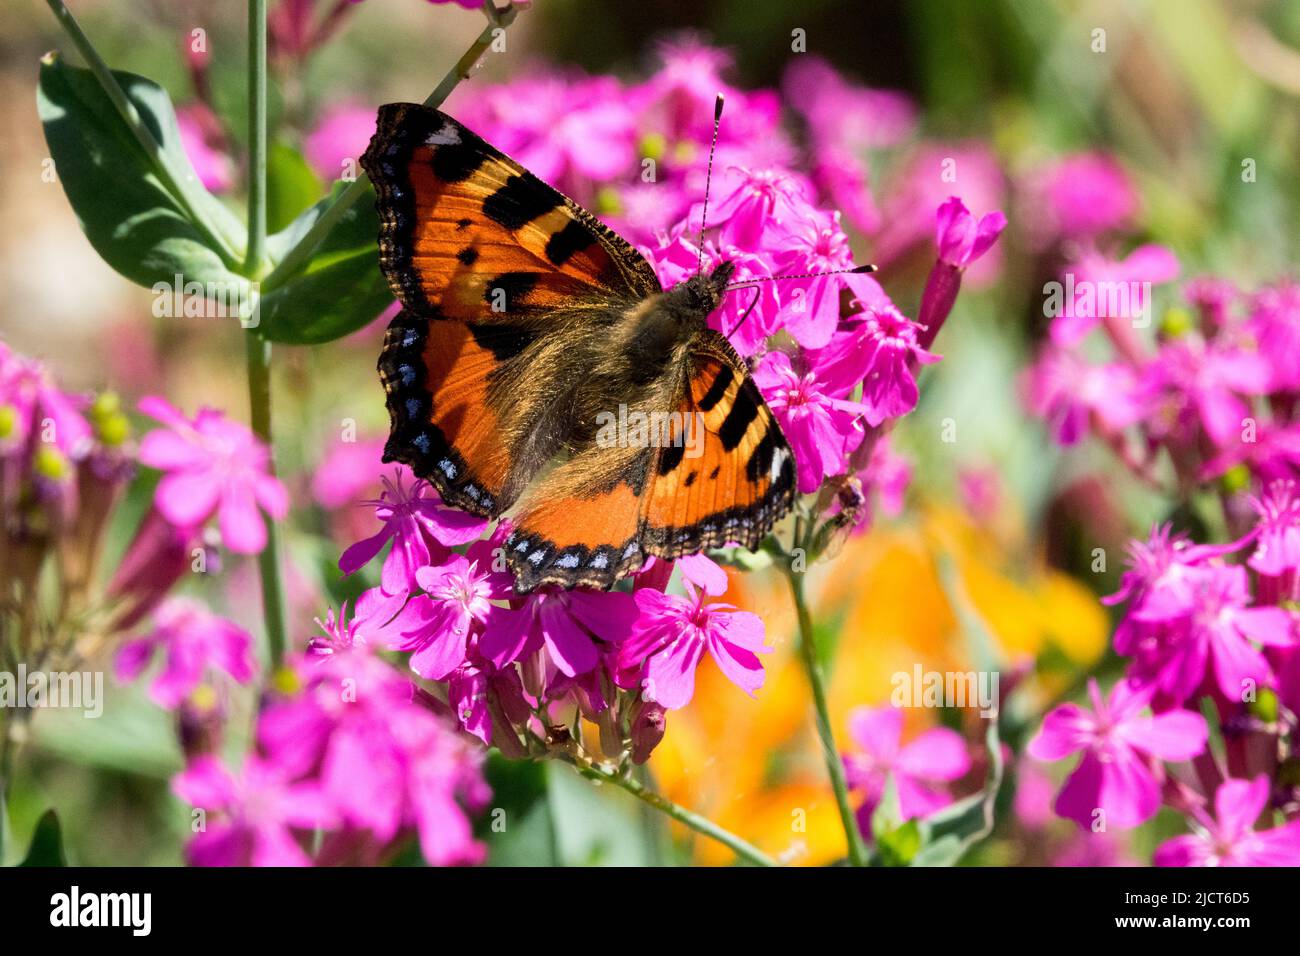 Small Tortoiseshell Butterfly spring Butterfly on flower Silene Stock Photo